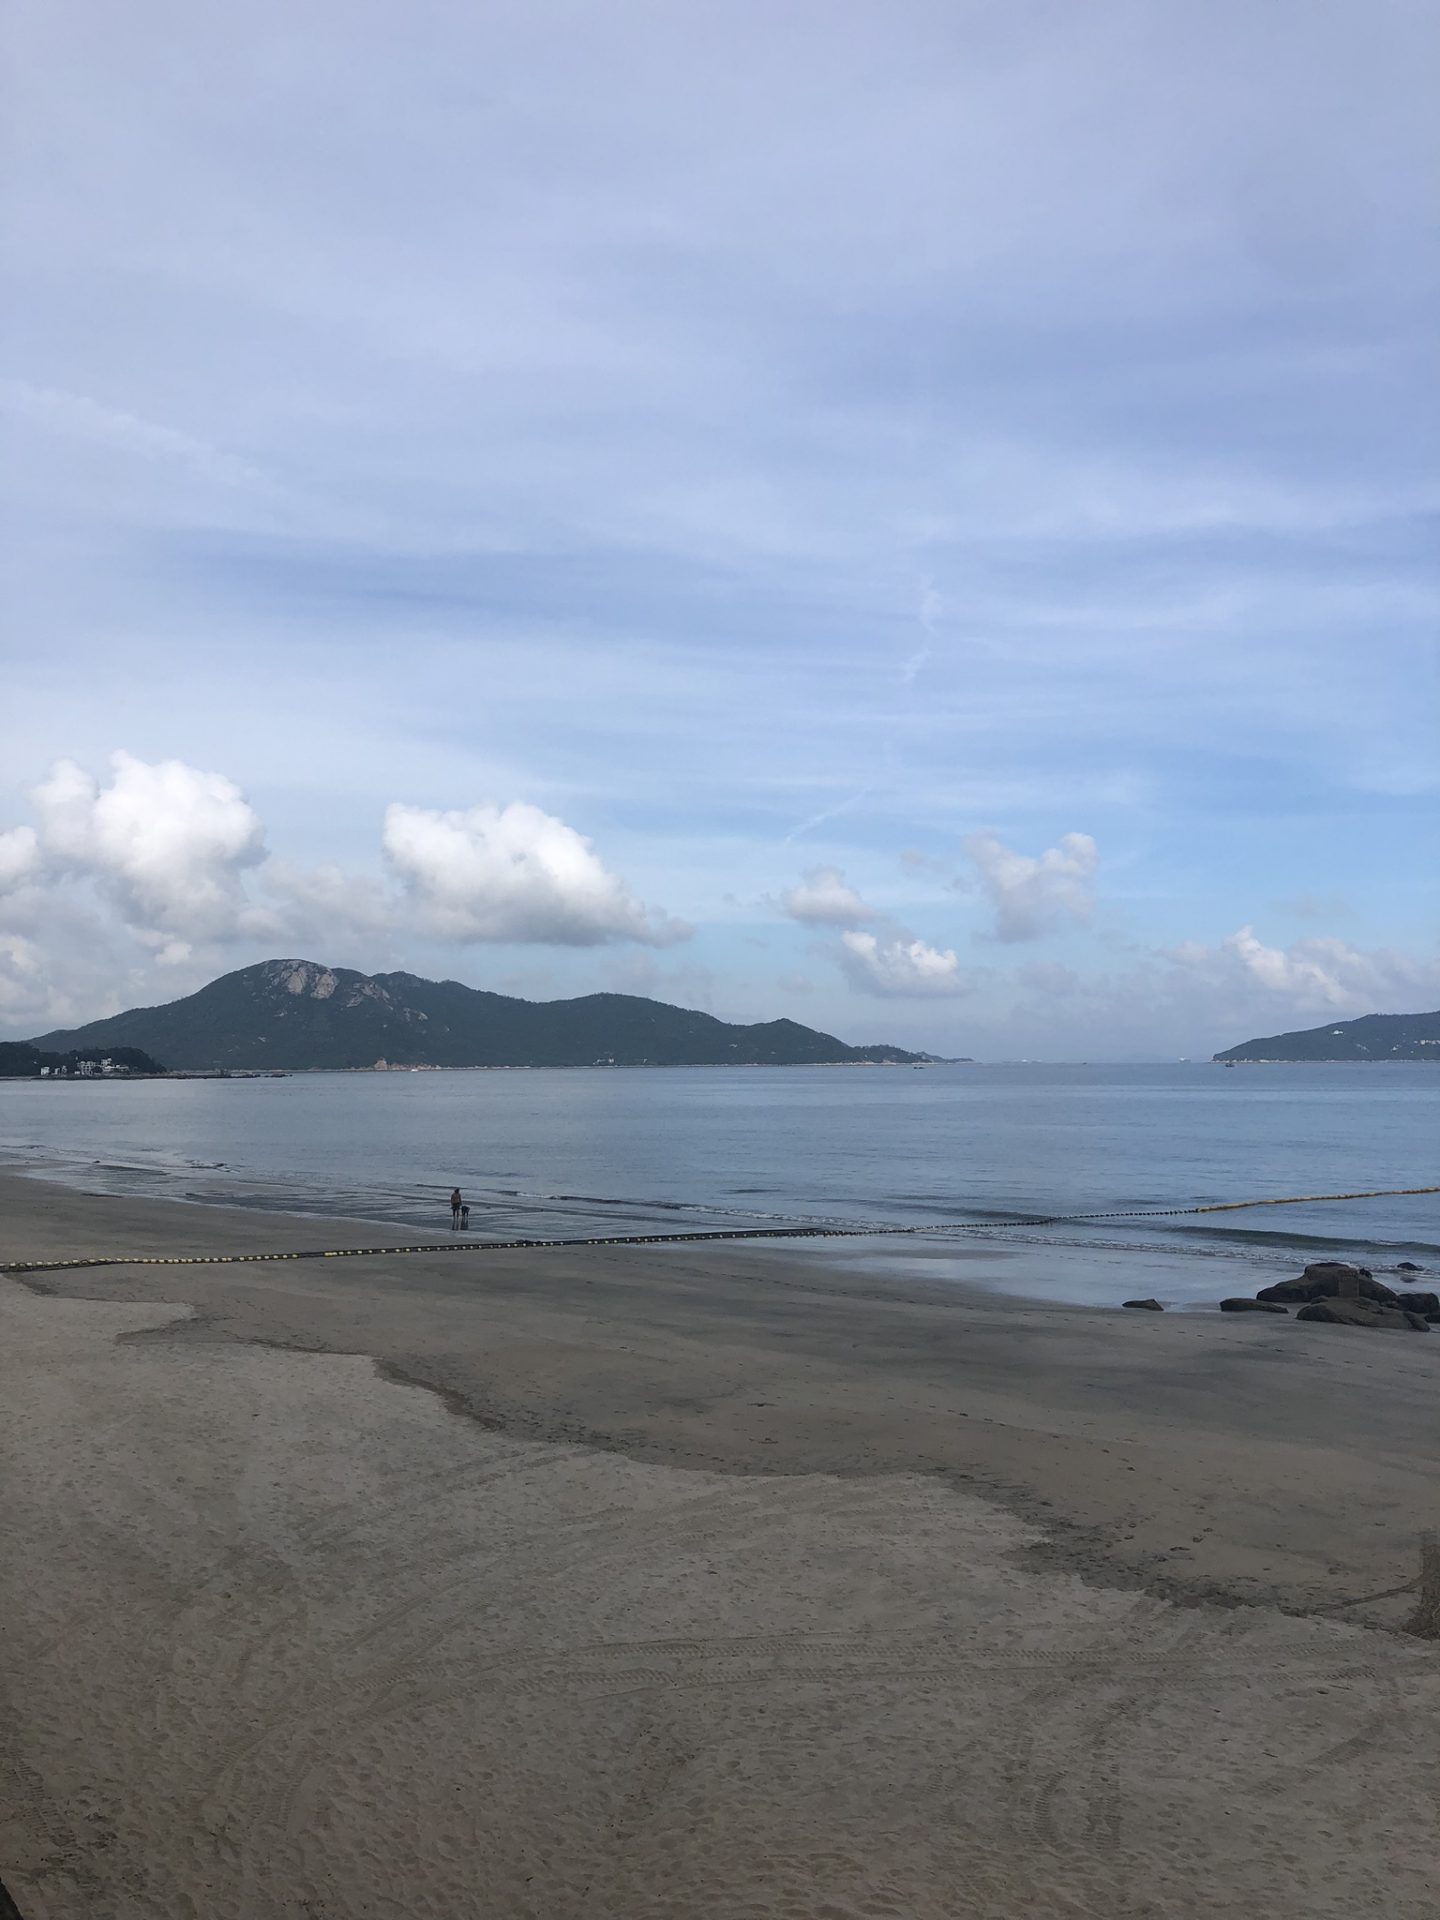 Cheung Sha Beach, Lantau Island